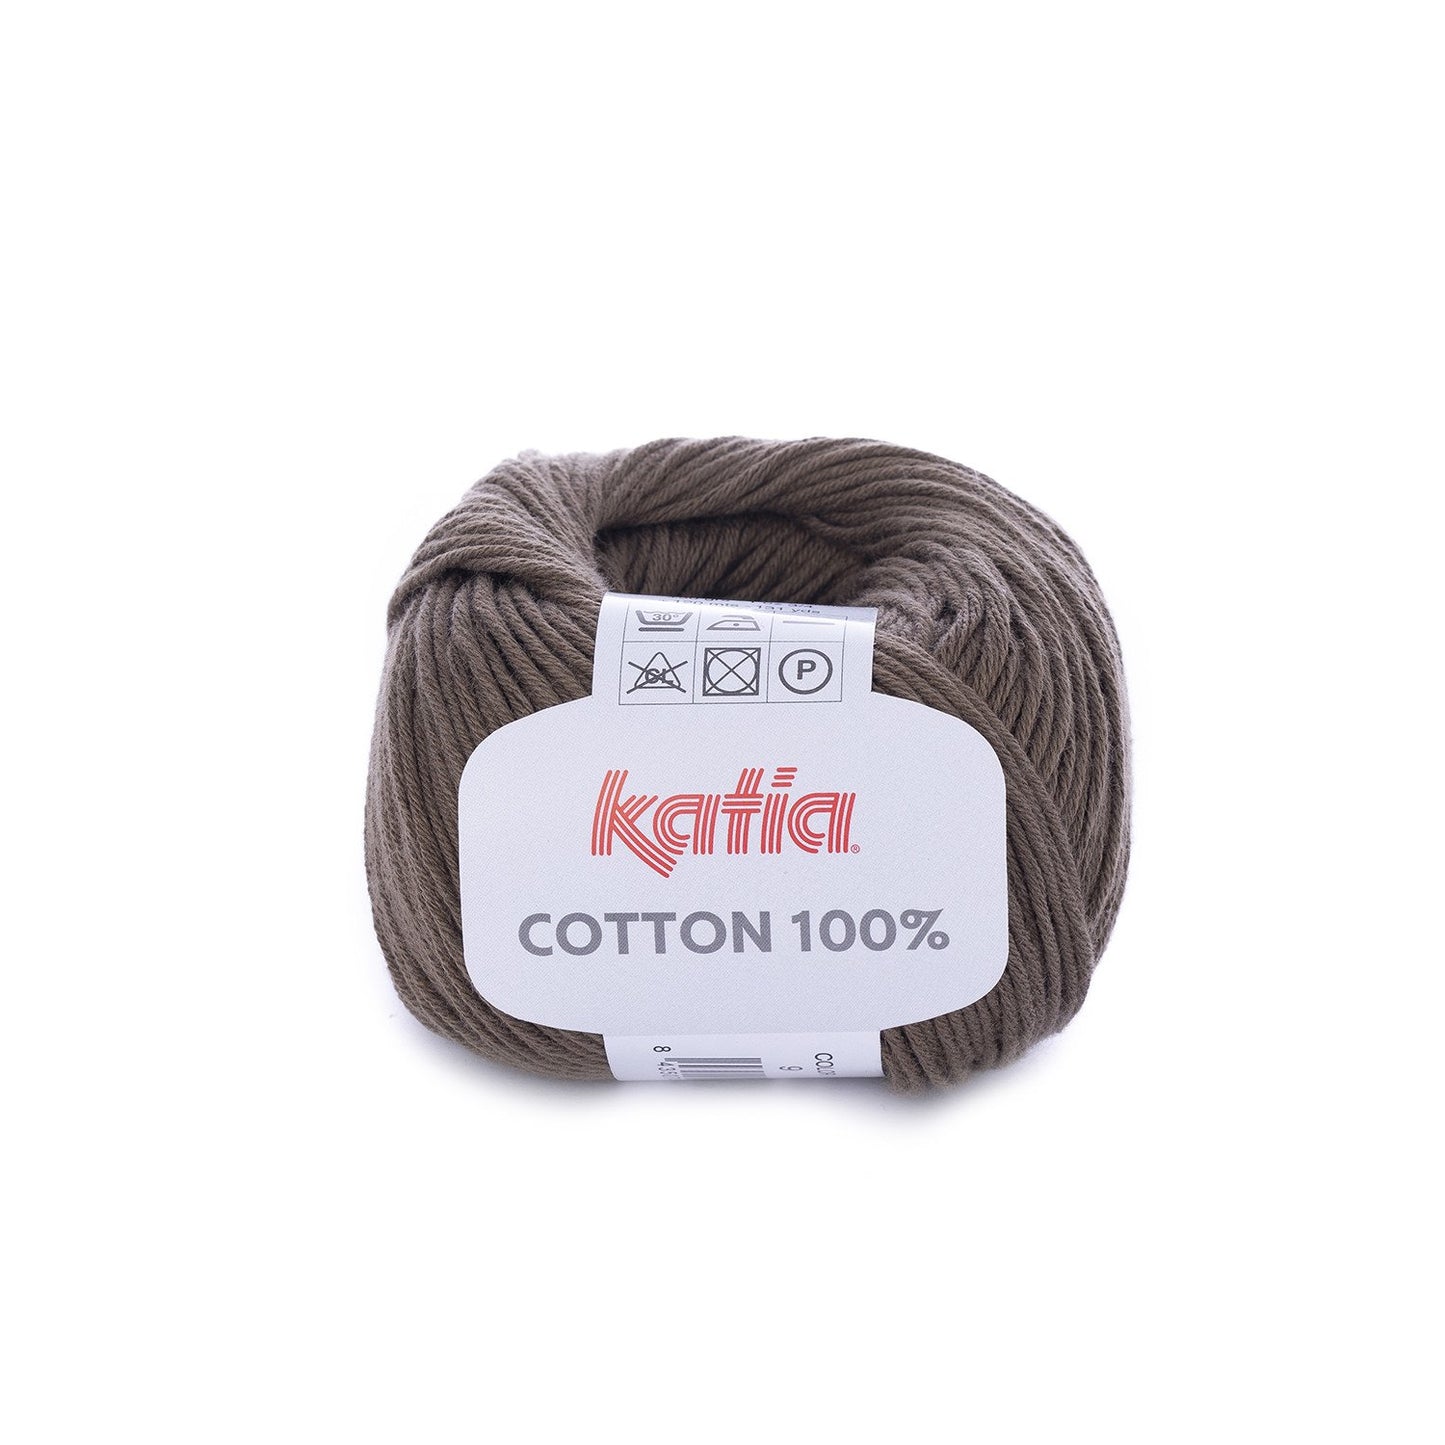 Cotton 100% - 9 marrón oscuro.